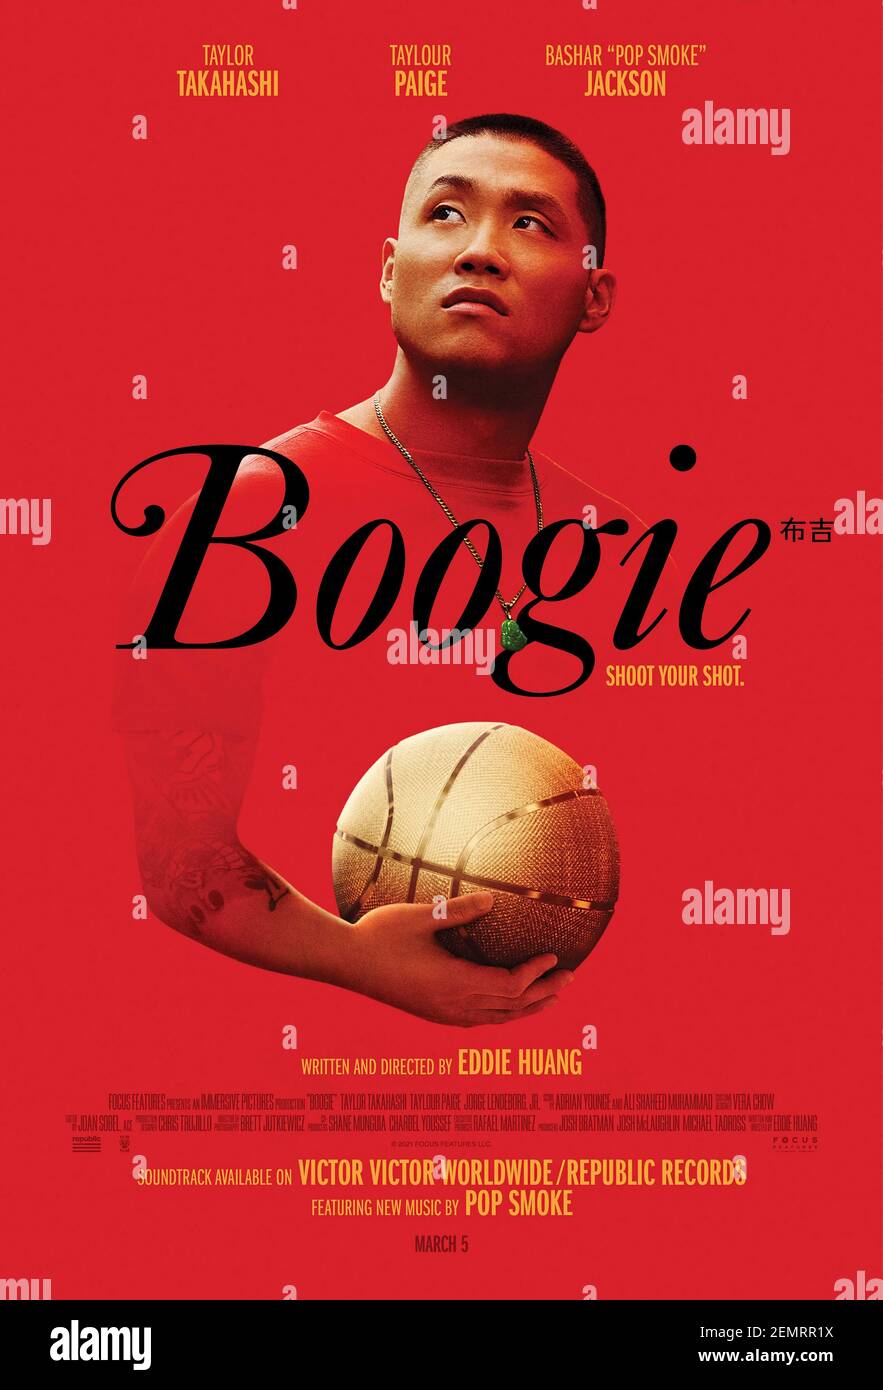 Boogie (2021) unter der Regie von Eddie Huang mit Taylor Takahashi, Pamelyn Chee und Jorge Lenzeborg Jr. Alfred Chin ist ein talentierter Basketballspieler und muss mit den vielen konkurrierenden Interessen in seinem Leben jonglieren. Stockfoto